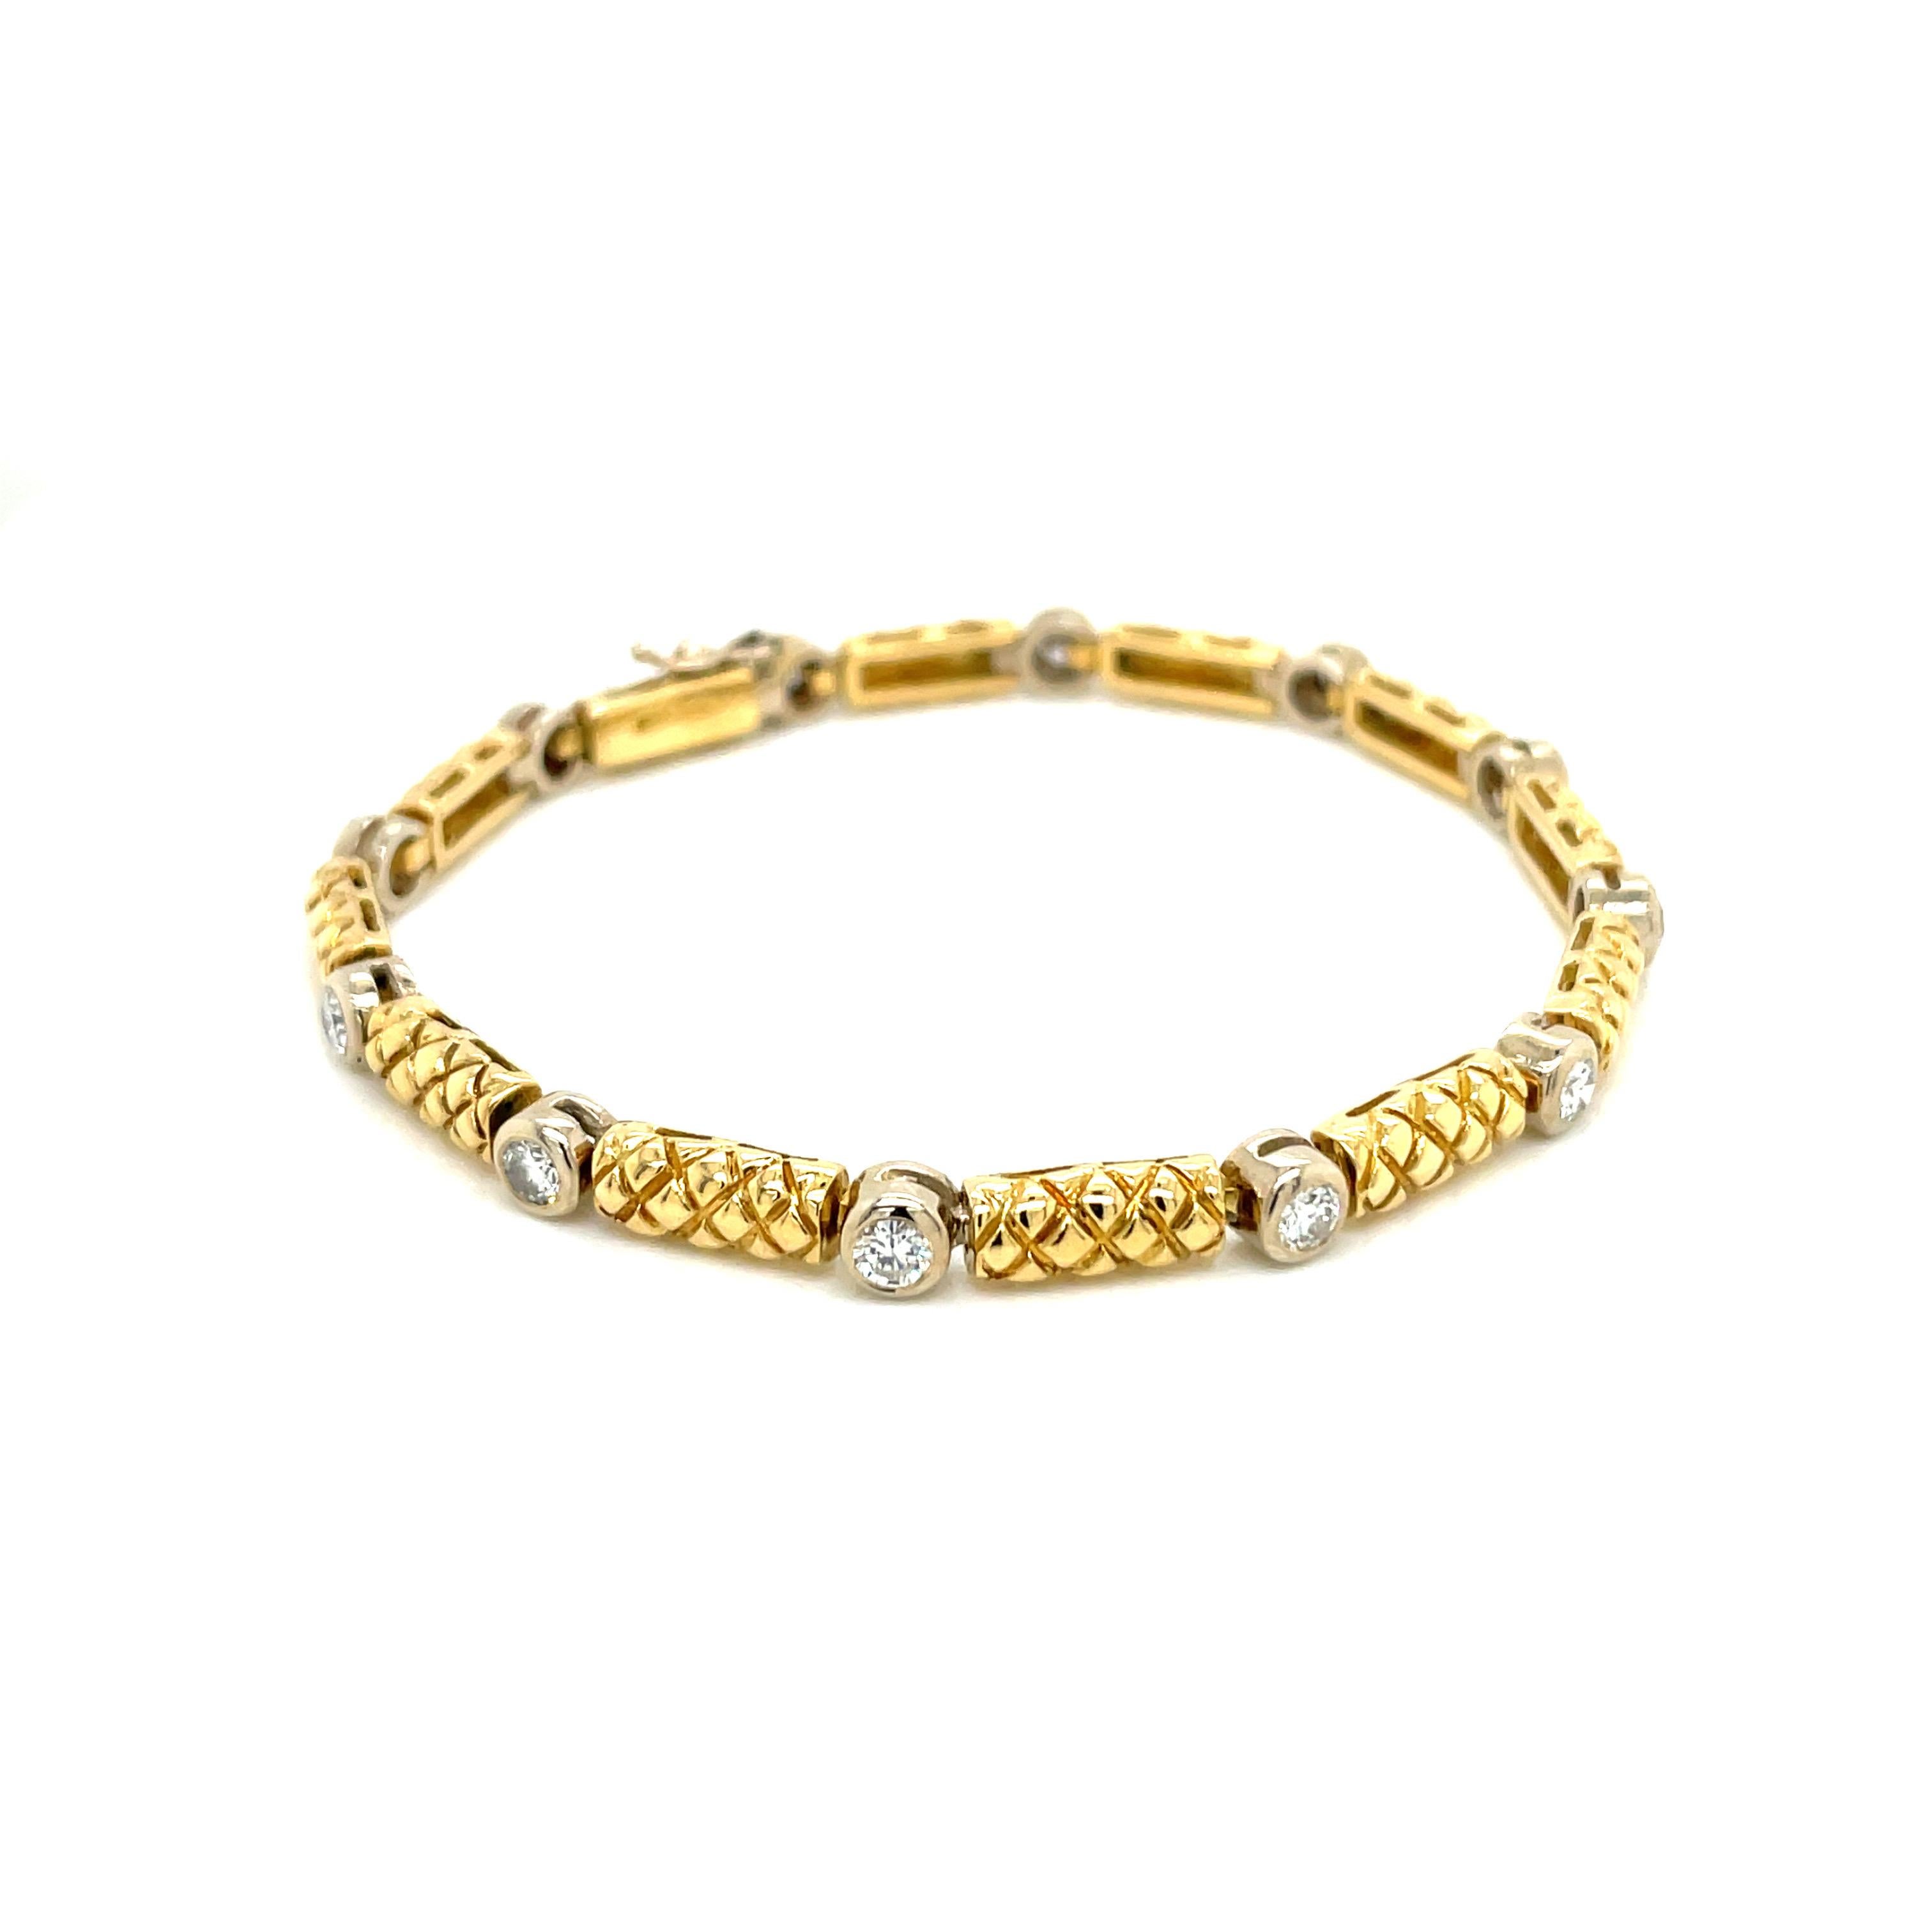 Bracelet vintage en or jaune 18k à maillons et diamants. Le bracelet à maillons en or massif 18 carats présente un design texturé. Il y a 12 diamants ronds de taille brillante sertis dans des chatons en or blanc 18k et pesant environ 2,00ct au